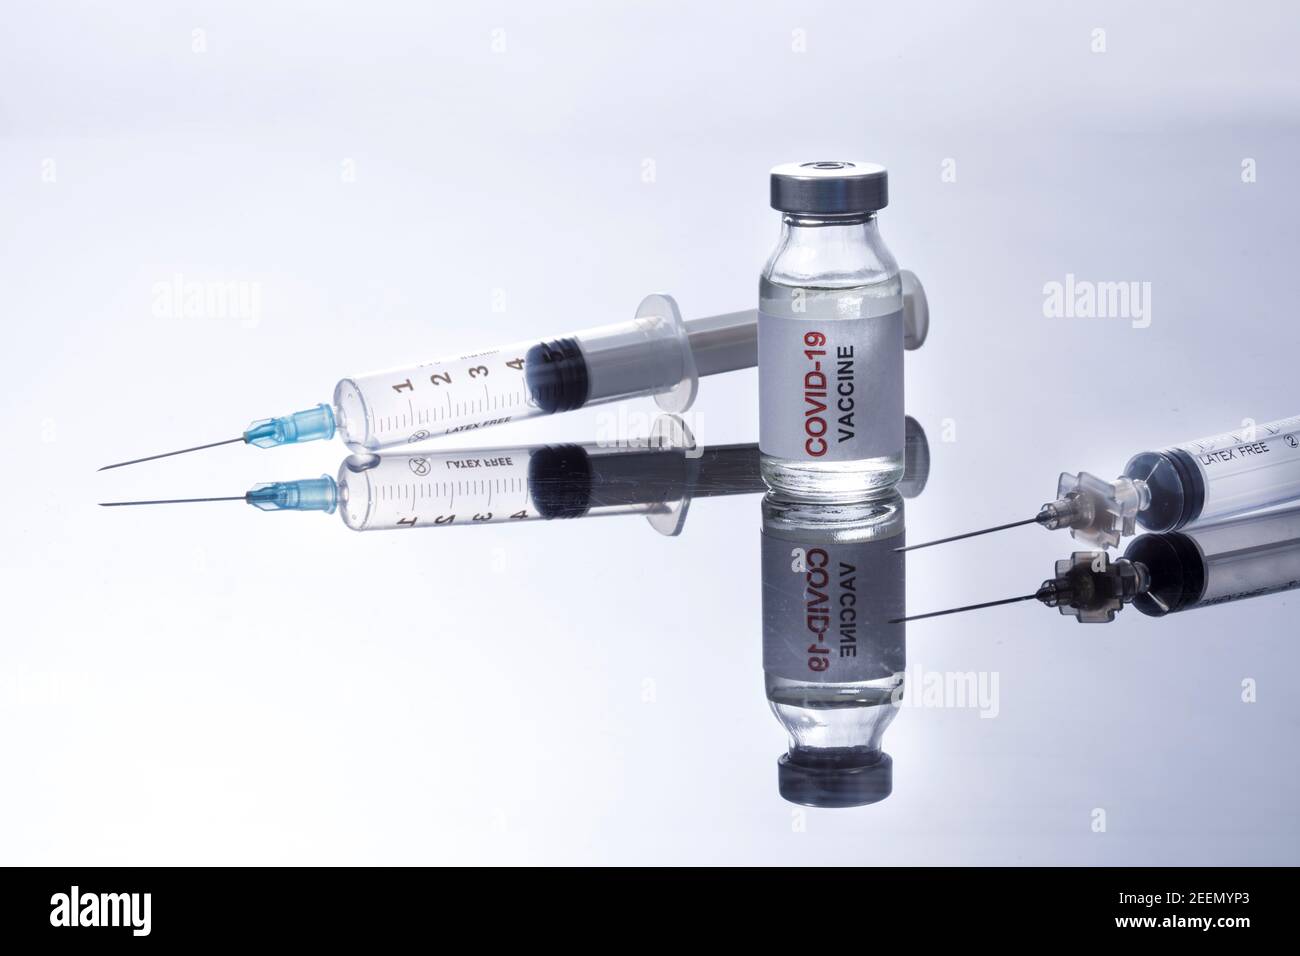 Coronavirus Vaccine Bottle with Syringes, Isolated on White Reflective Background Stock Photo